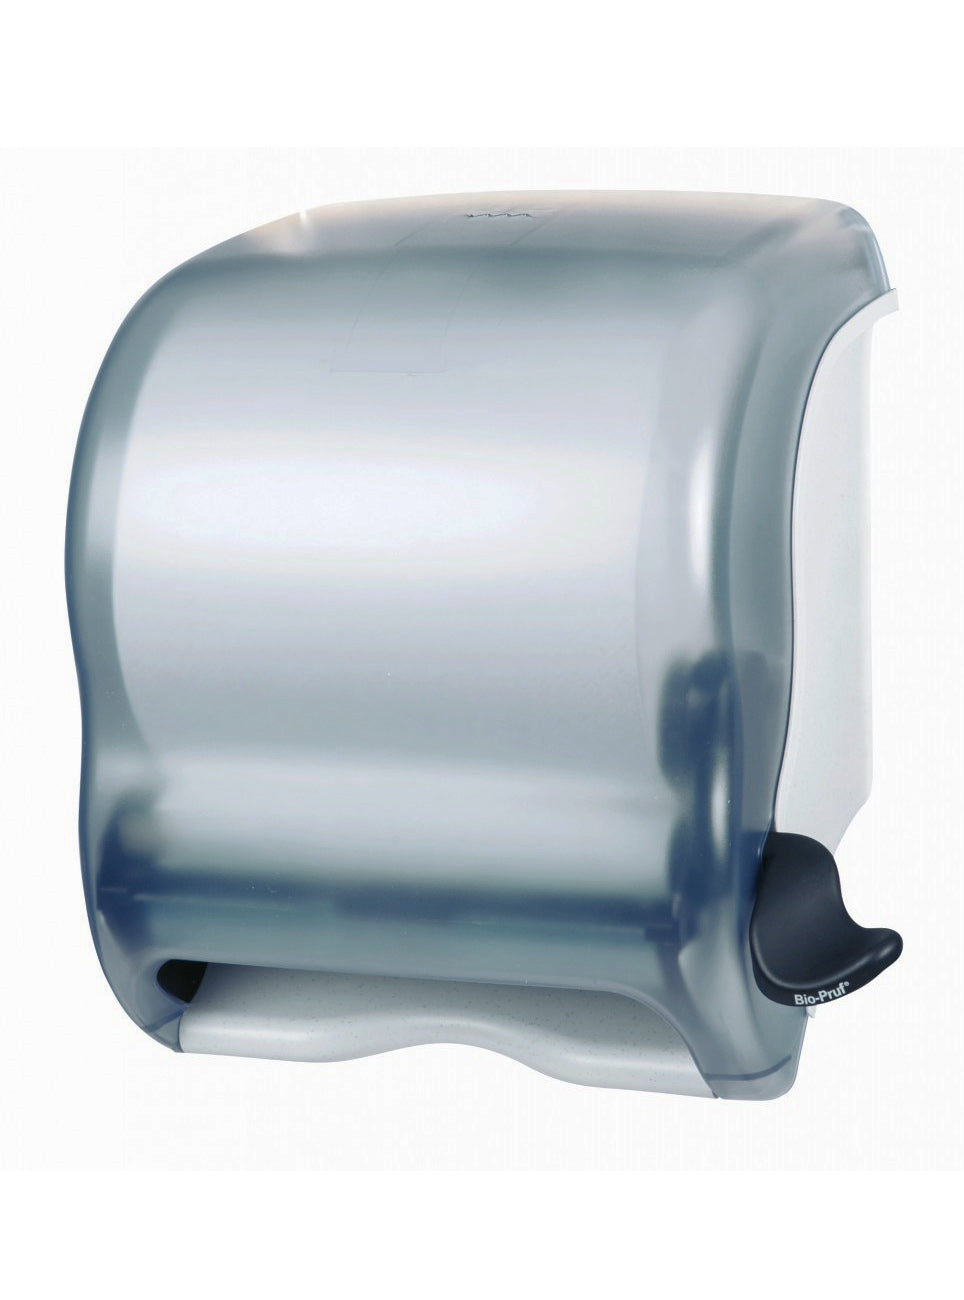 MPD405 Lever-Roll  Paper Towel Dispenser 1 per carton